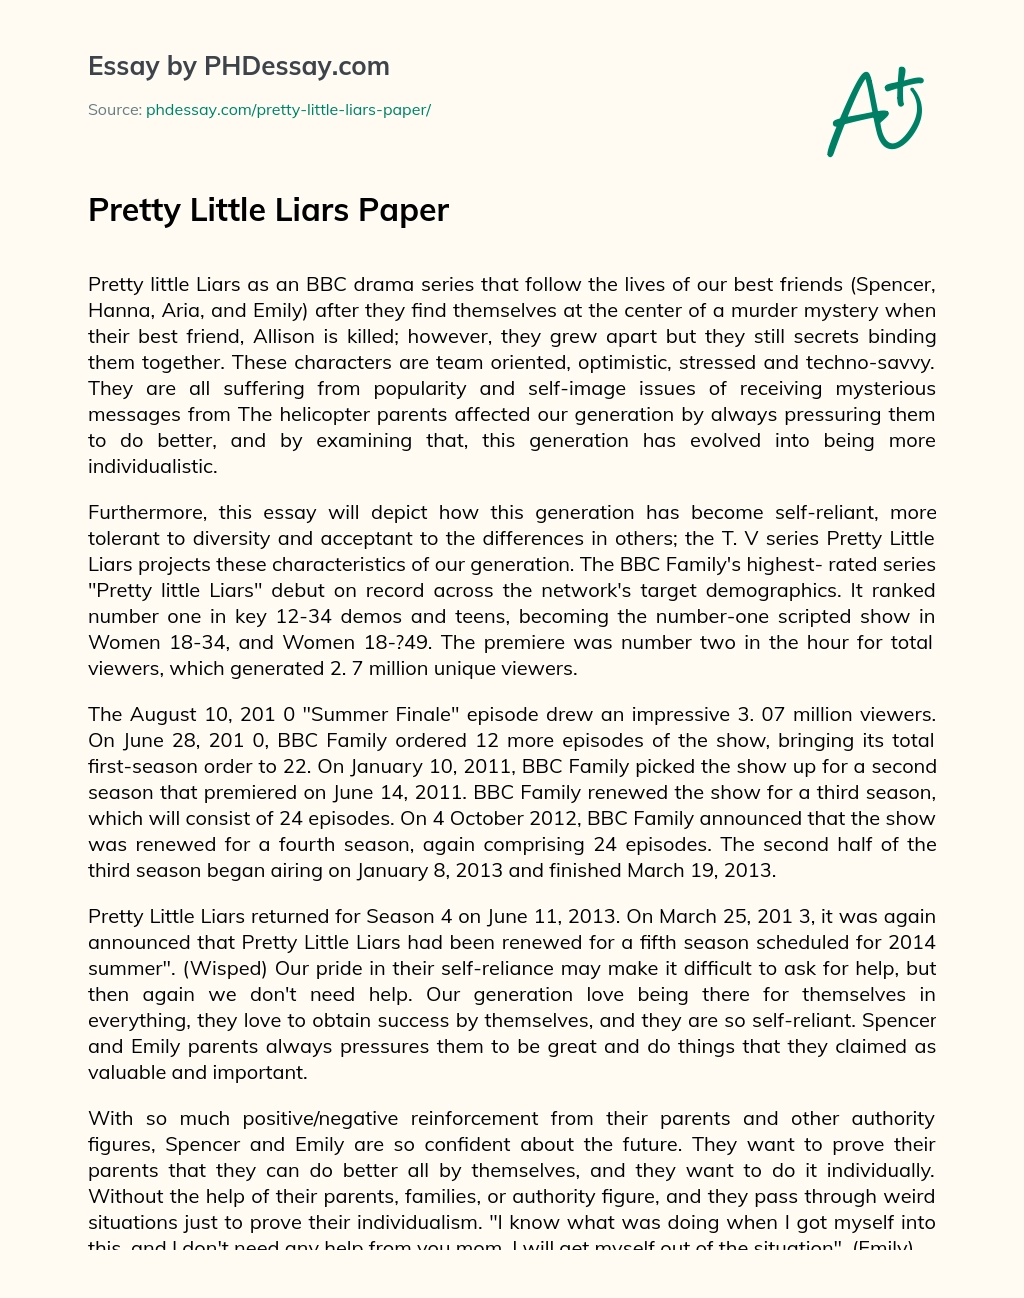 Pretty Little Liars Paper essay